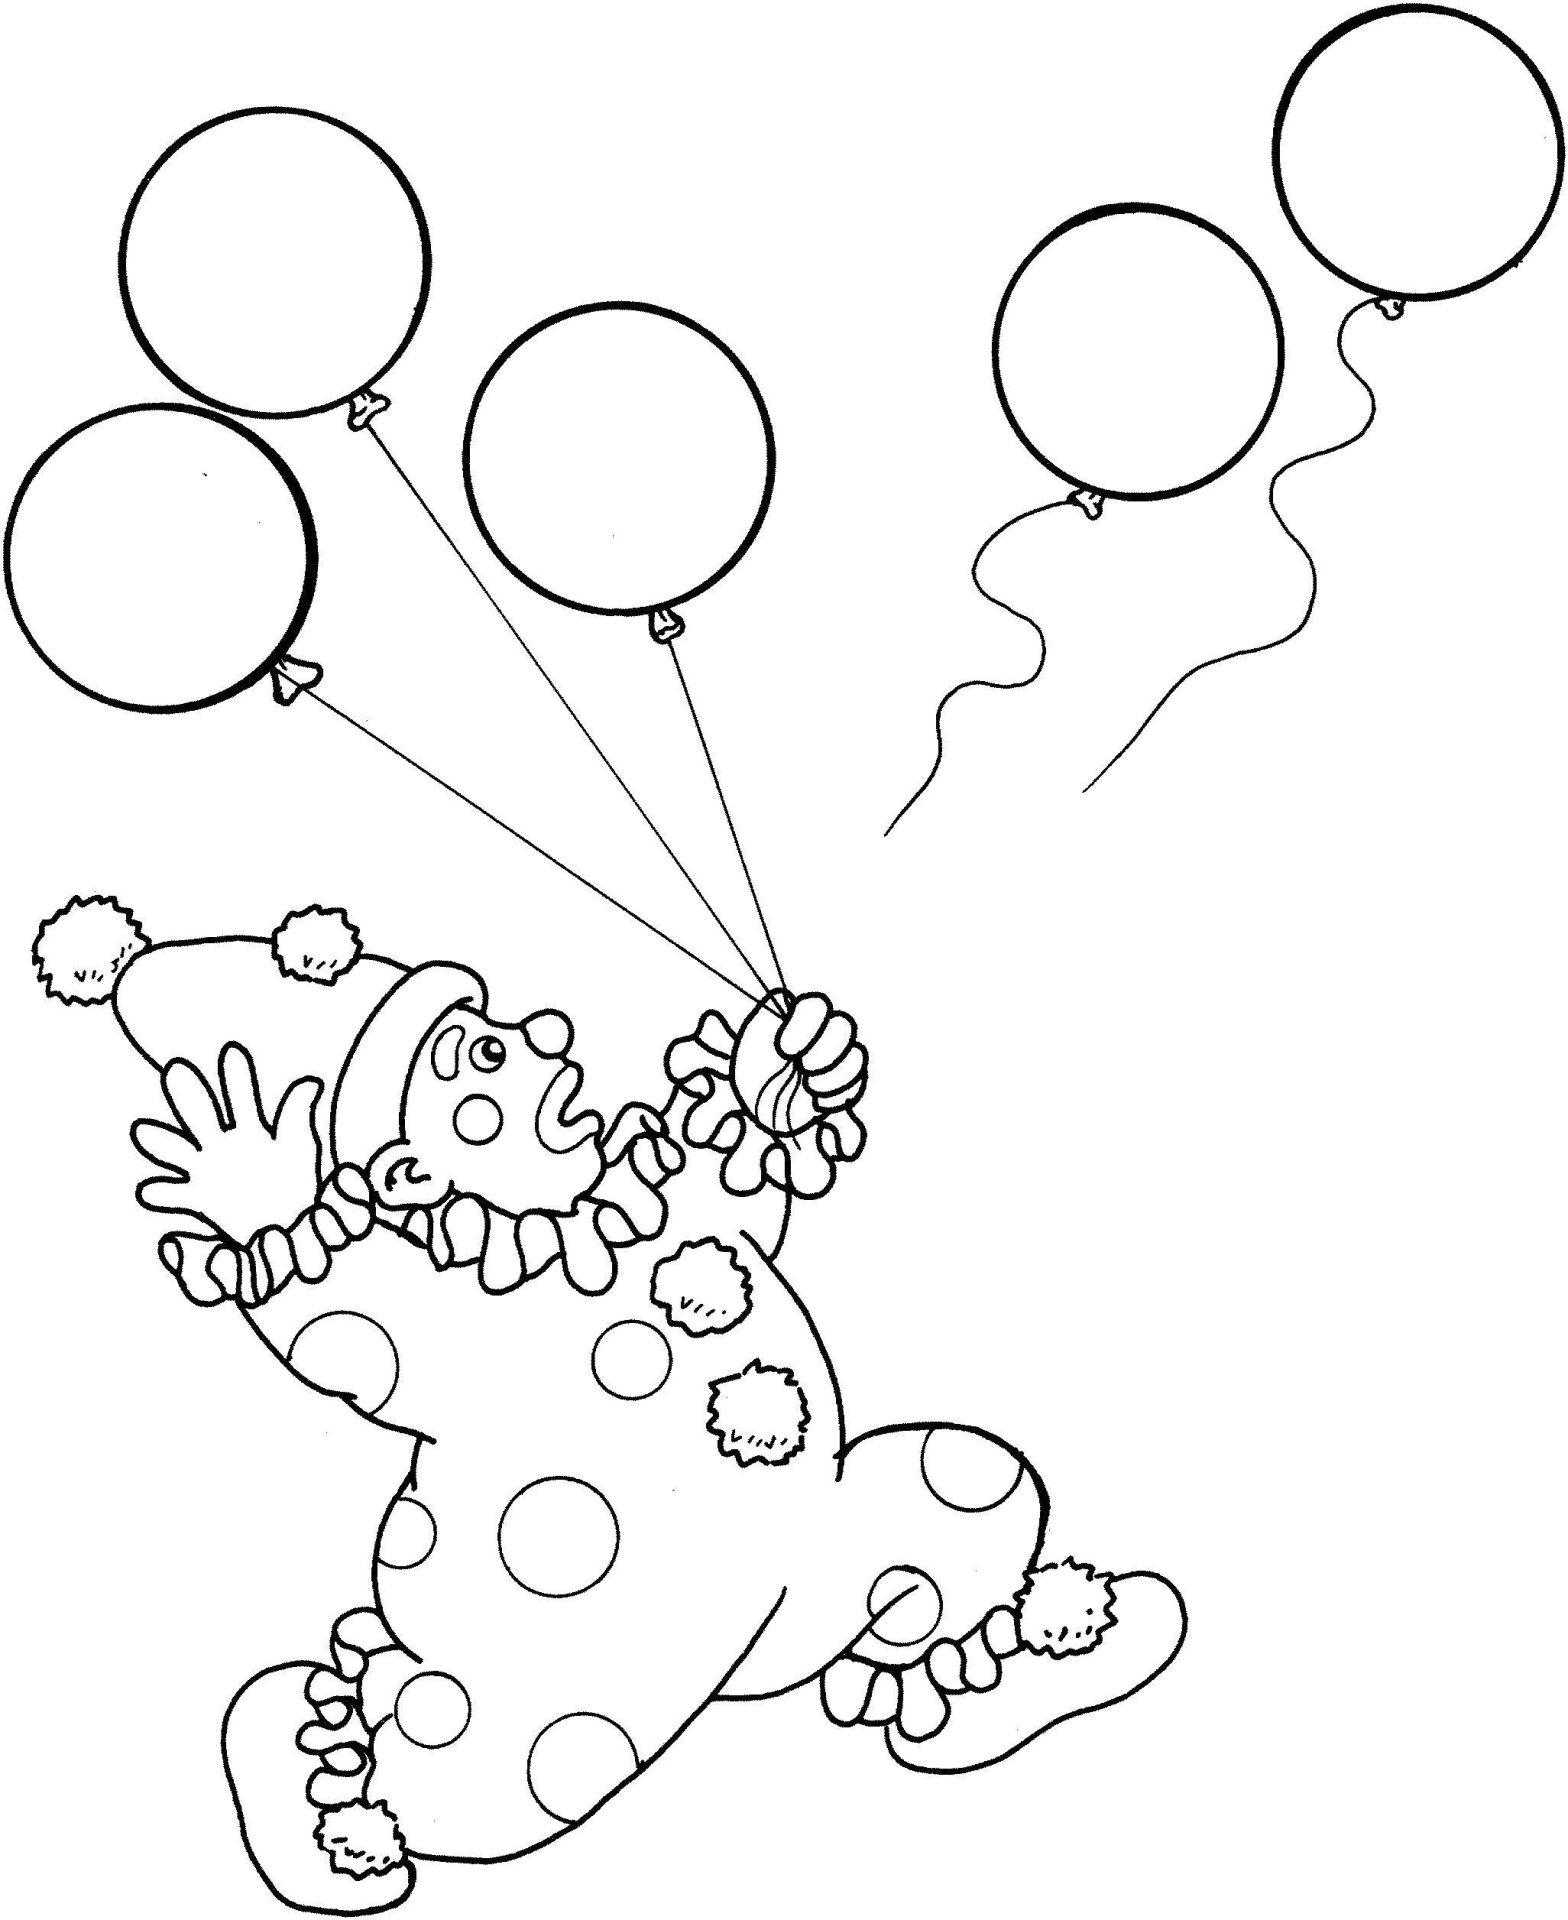 Раскраска с клоунами и шариками (клоуны, шарики)